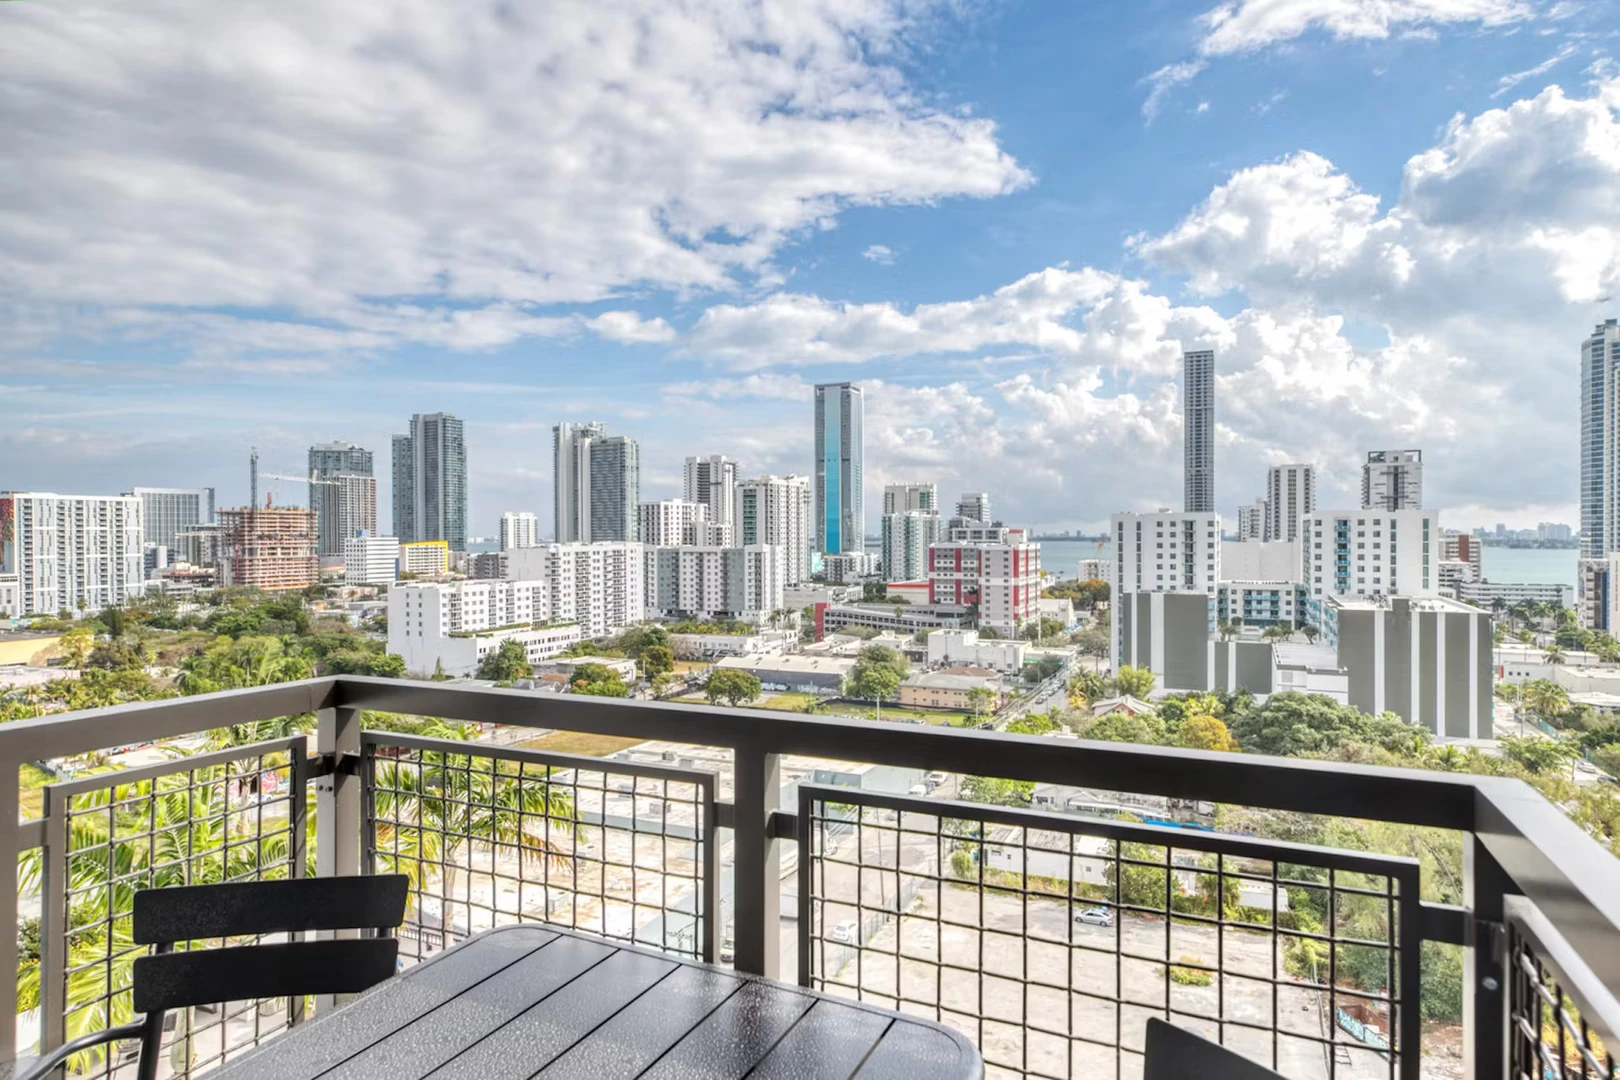 Apartamento moderno y luminoso en Miami